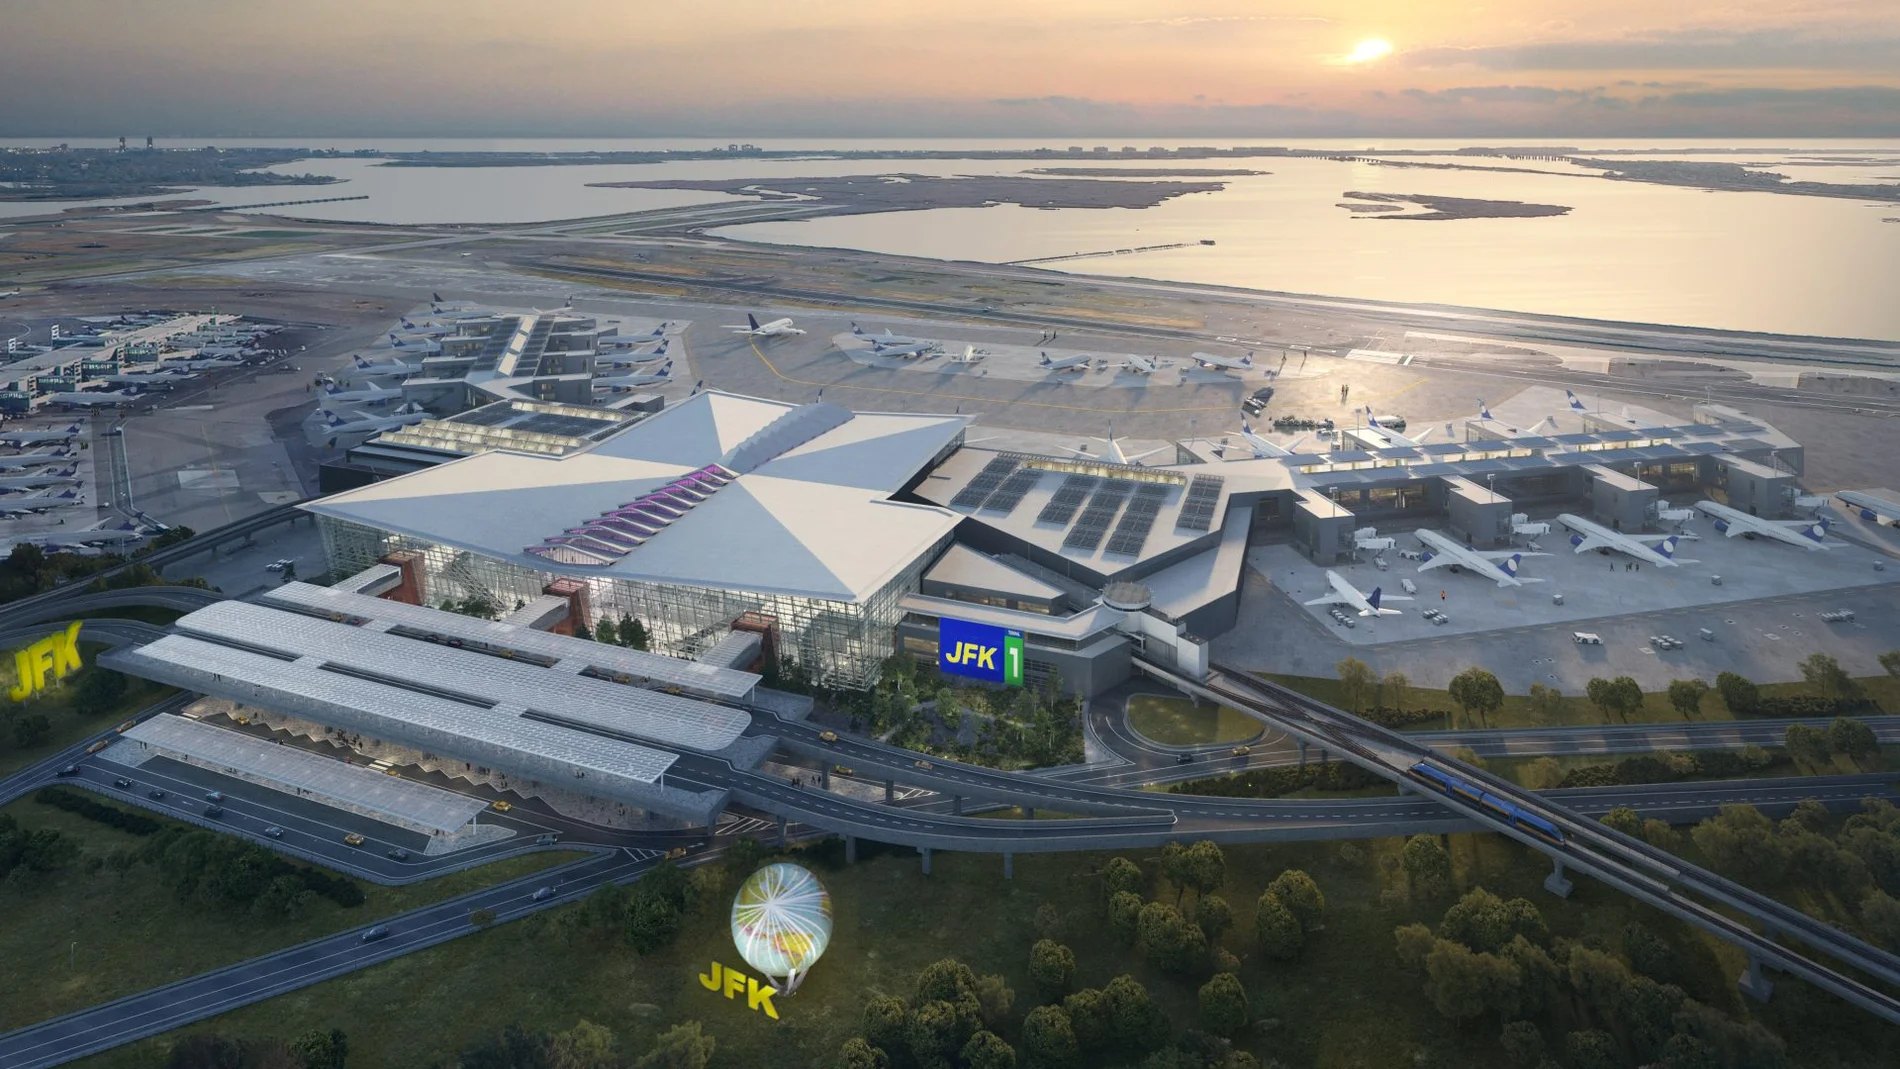 Recreación de la futura terminal del aeropuerto JFK de Nueva York